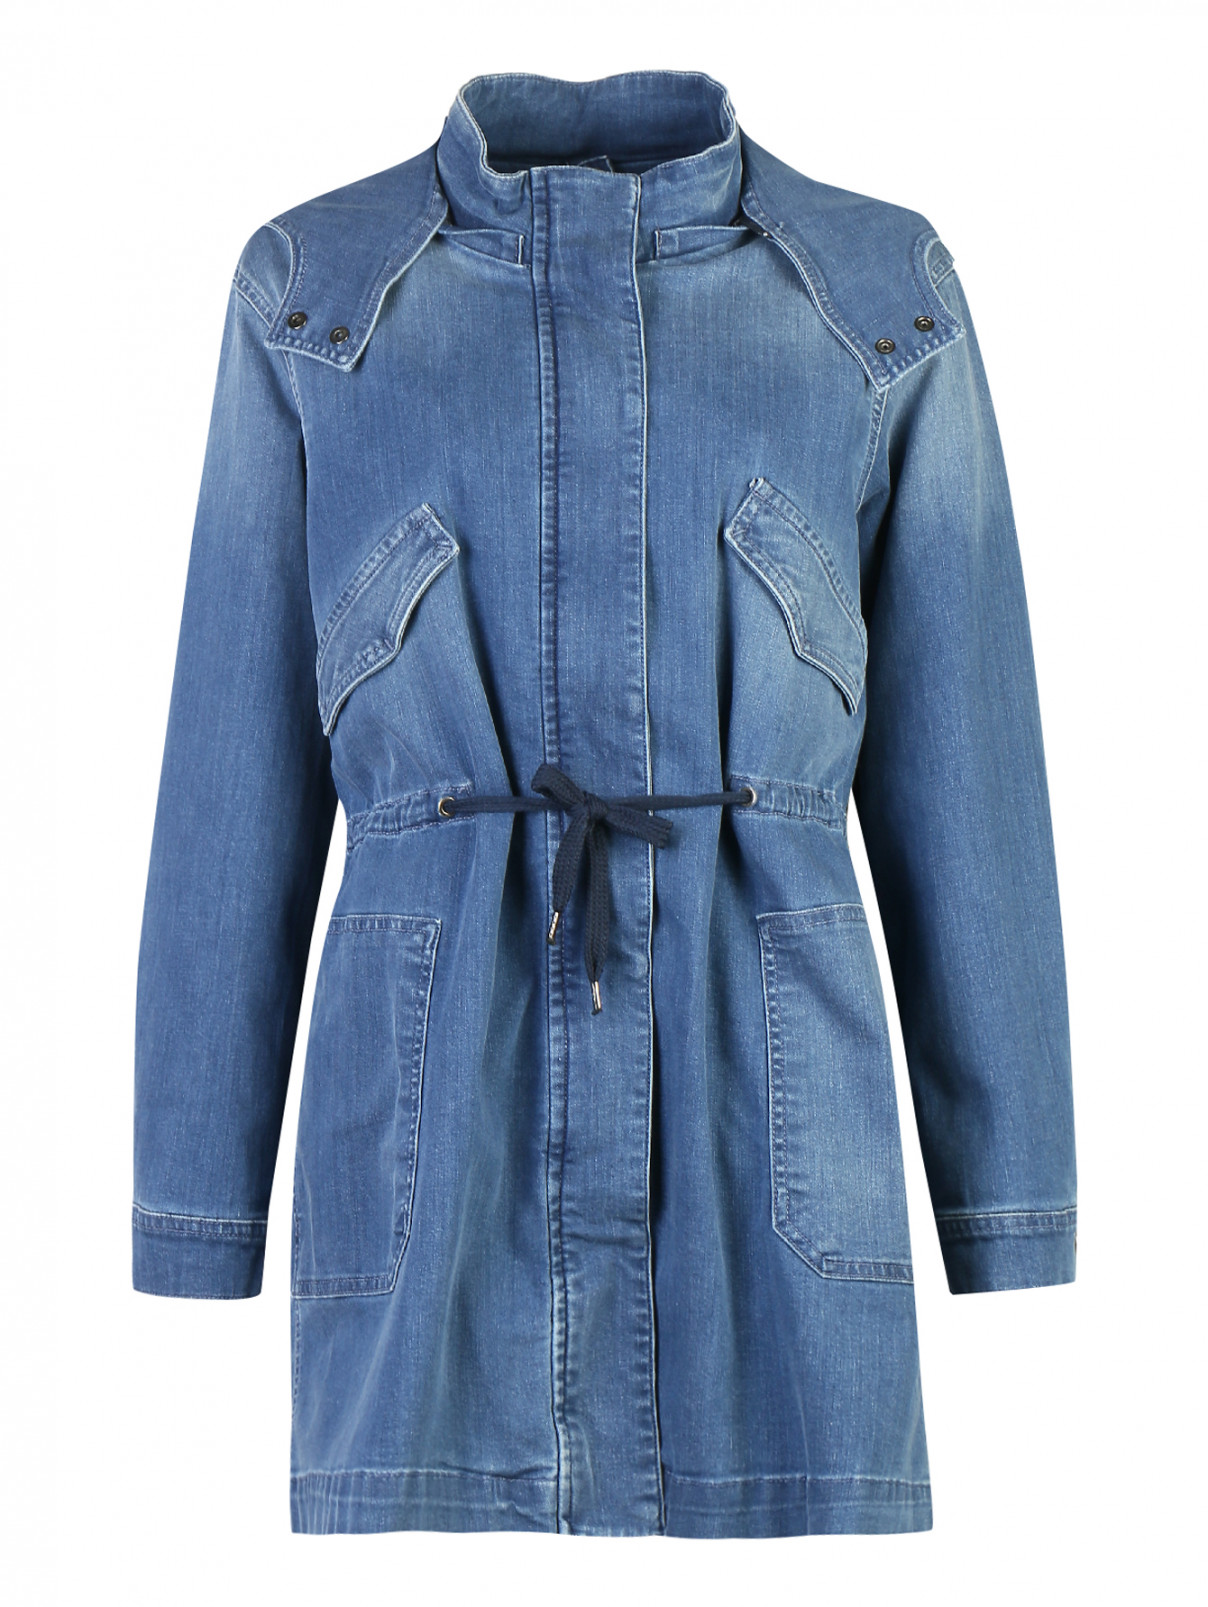 Куртка джинсовая, удлиненная, из хлопка Persona by Marina Rinaldi  –  Общий вид  – Цвет:  Синий